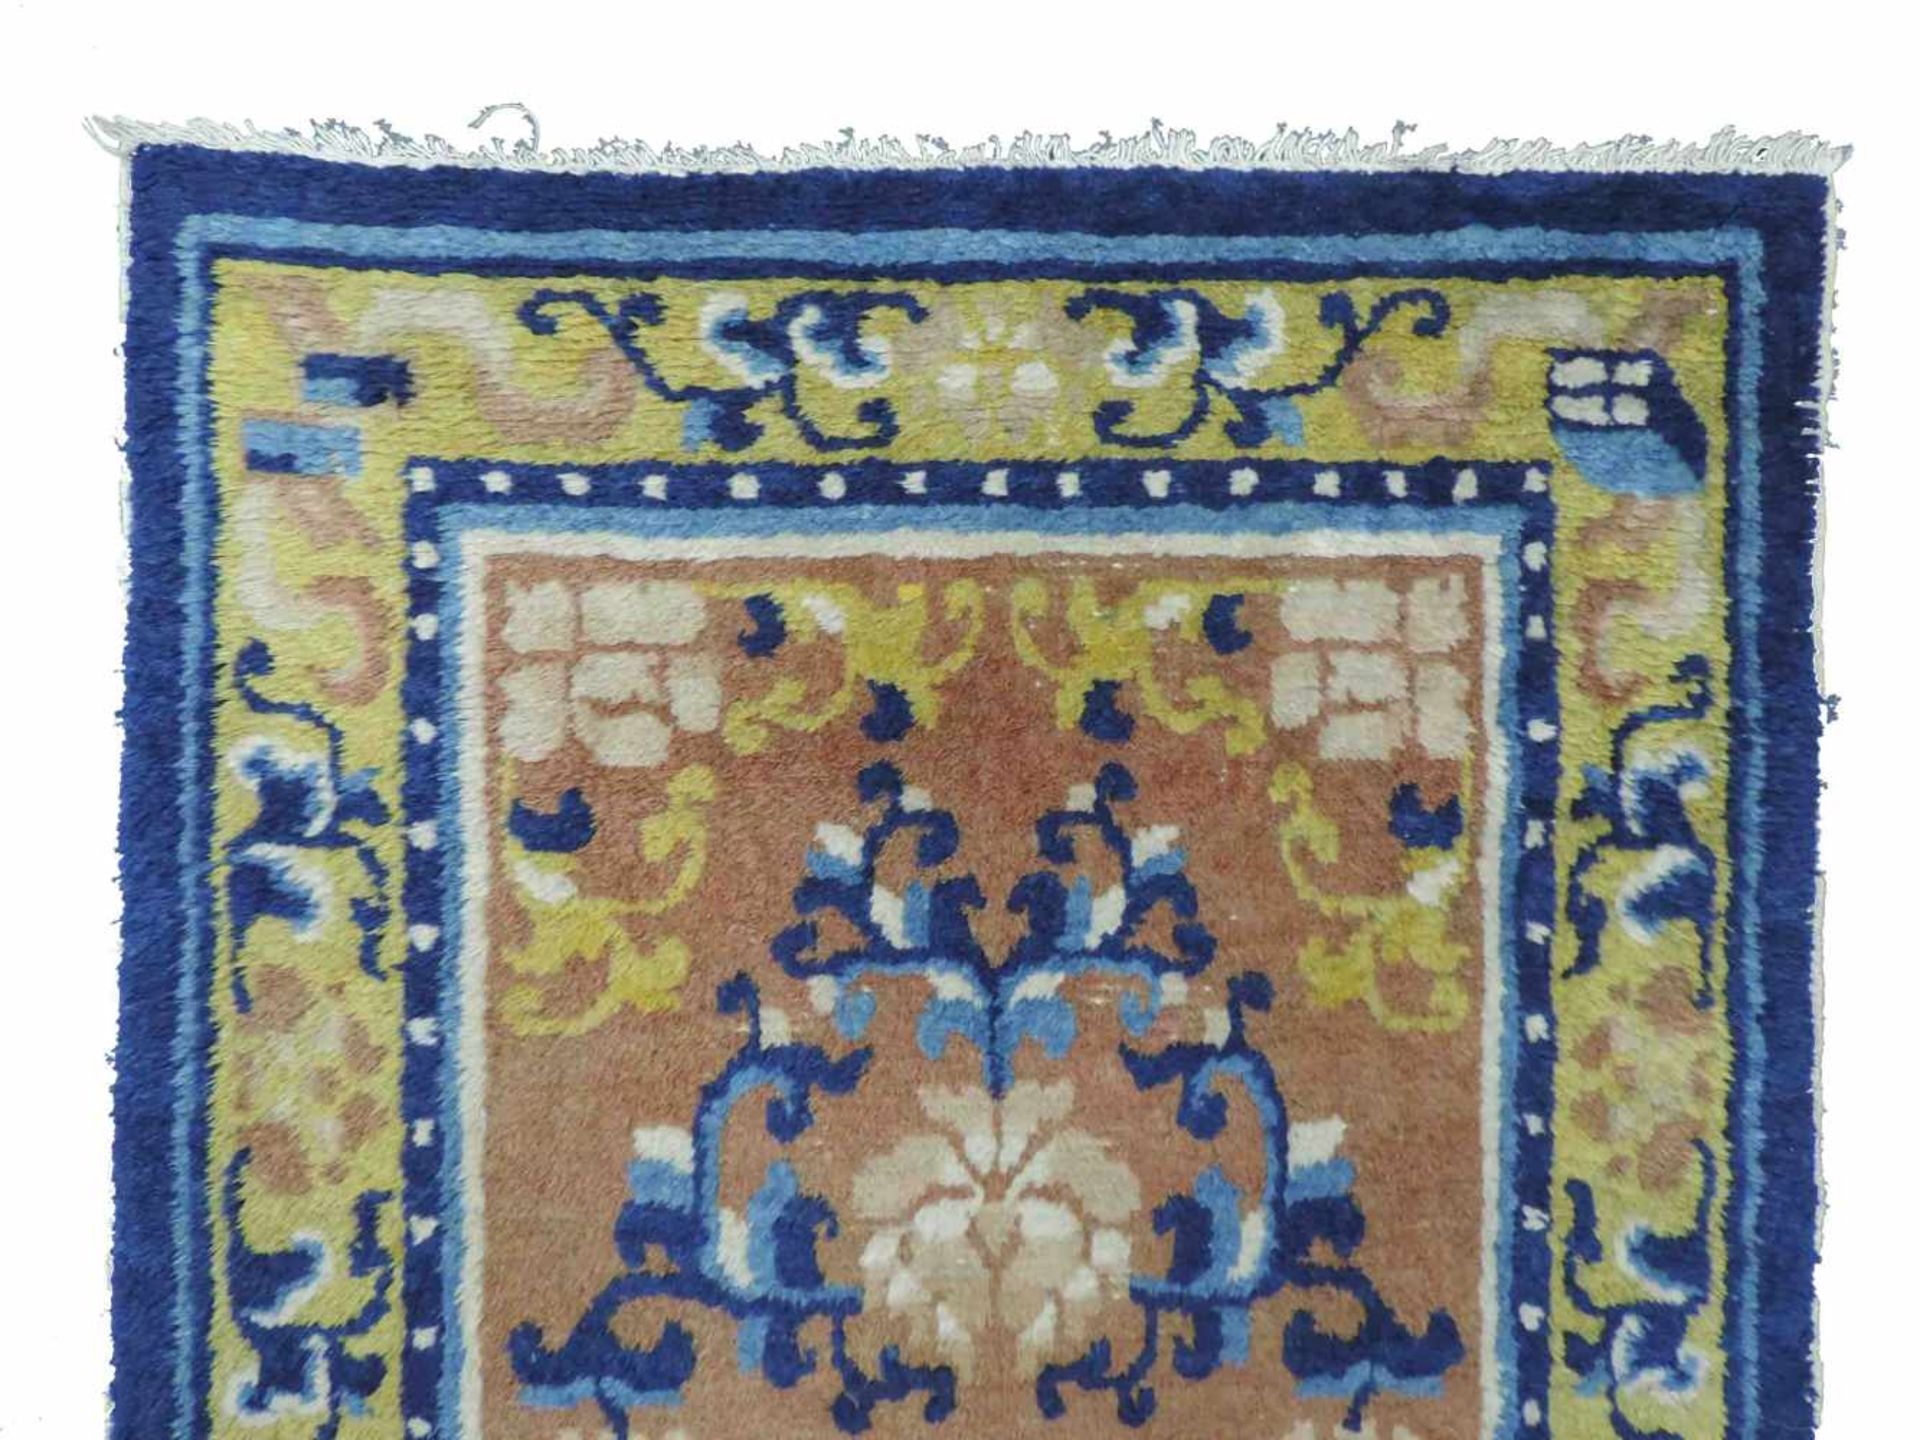 Ningxia Dorfteppich. China. Antik, um 1800. 152 cm x 76 cm. Orientteppich. Handgeknüpft. Wolle auf - Bild 3 aus 5